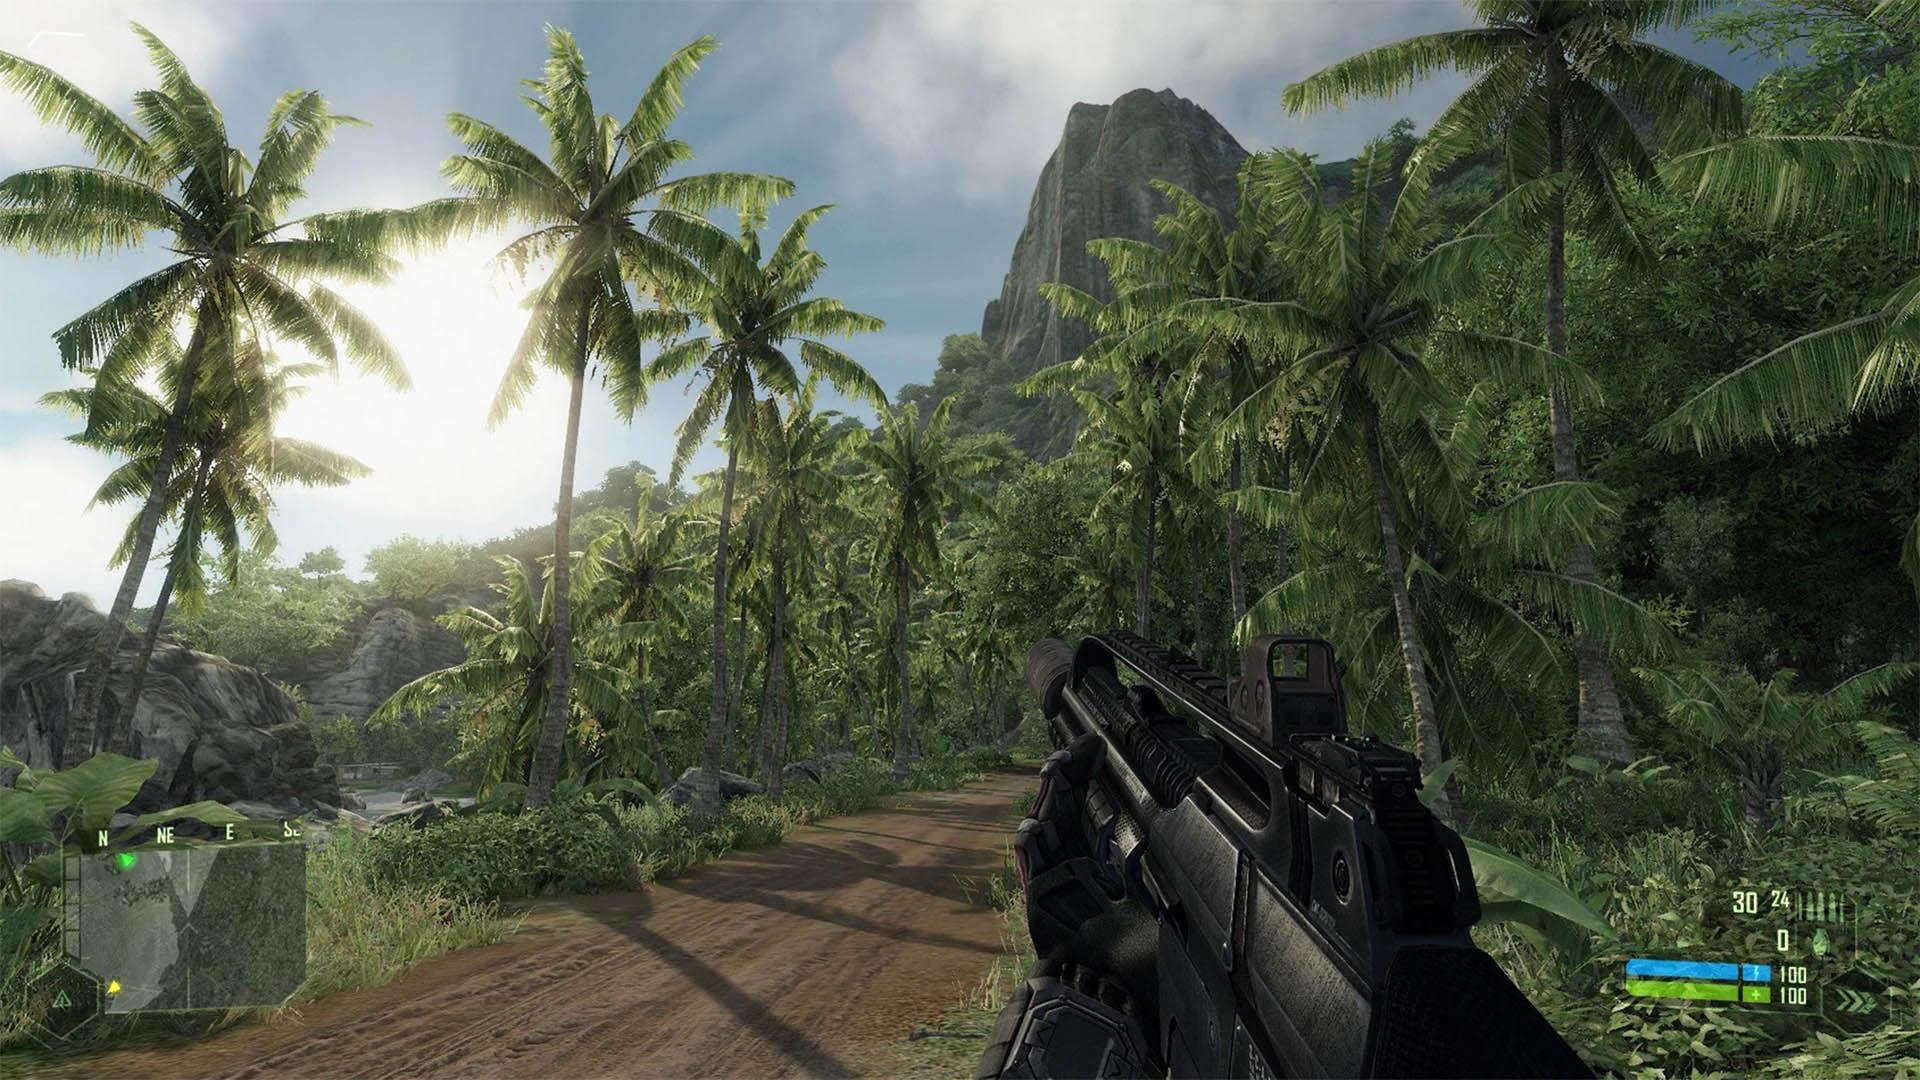 جنگل و درختان در بازی Crysis